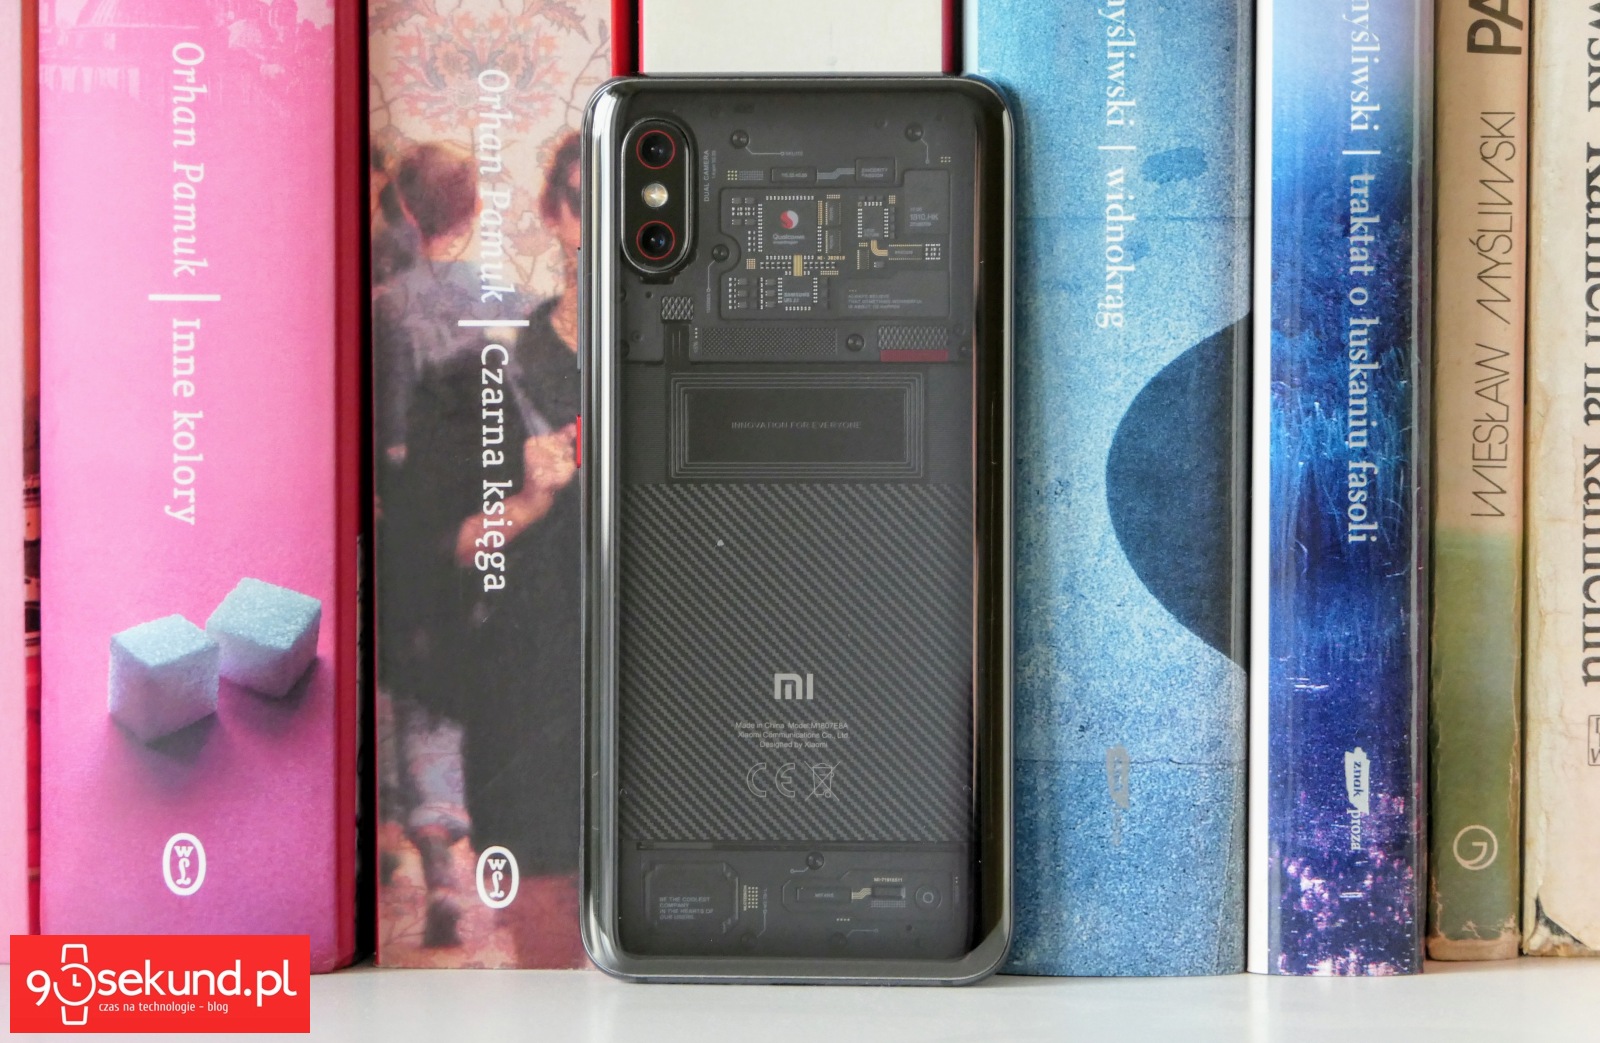 Recenzja Xiaomi Mi 8 Pro - Michał Brożyński 90sekund.pl